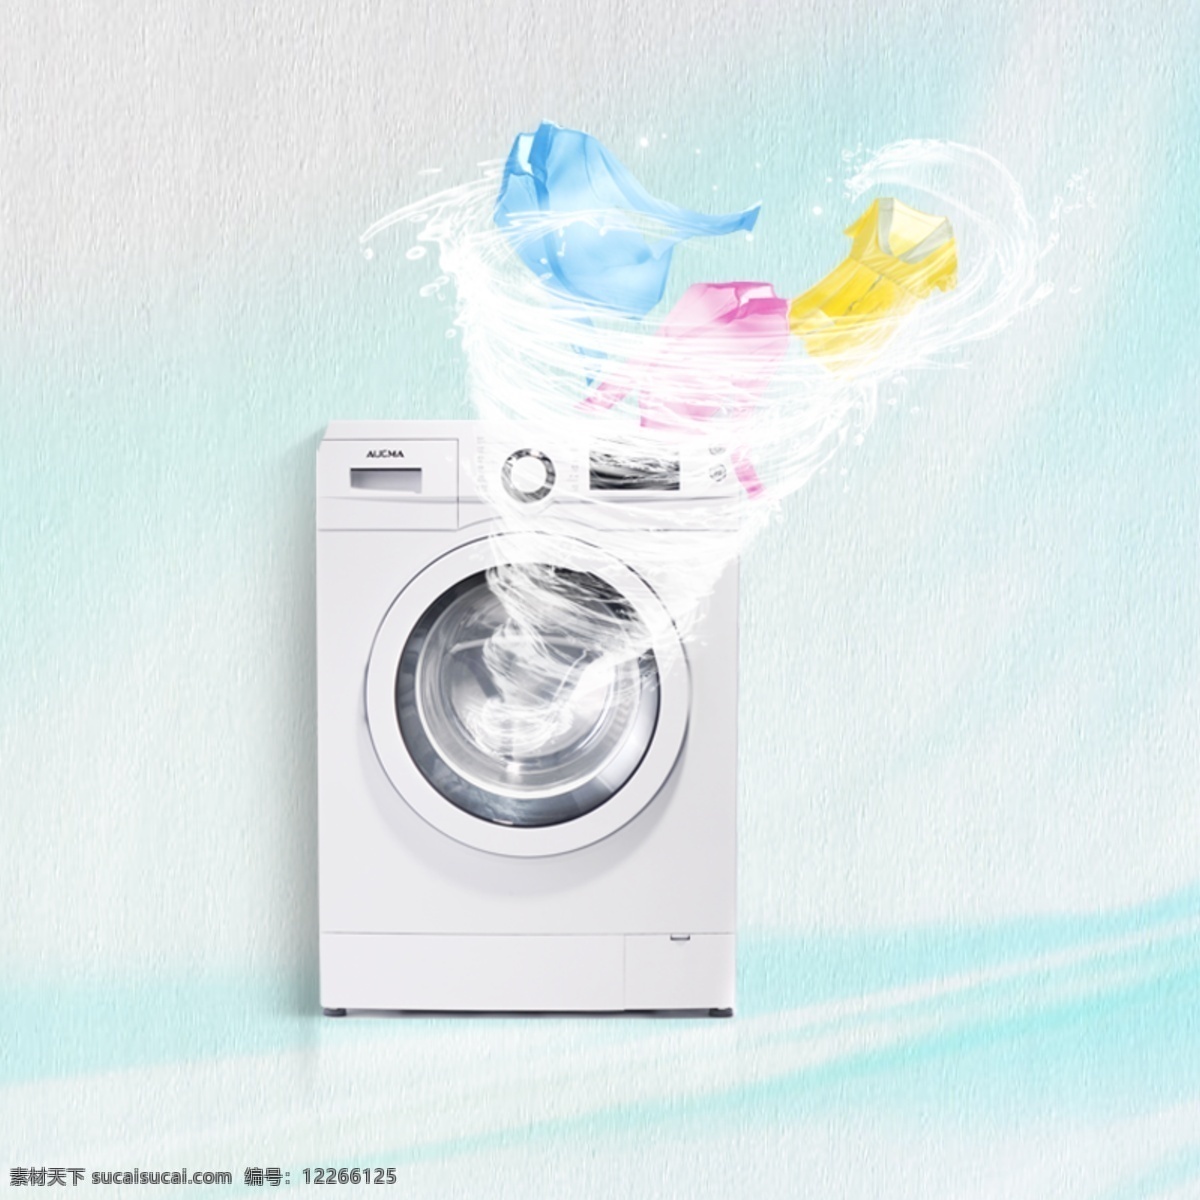 旋风 洗衣机 衣服 蓝色背景 漩涡 风